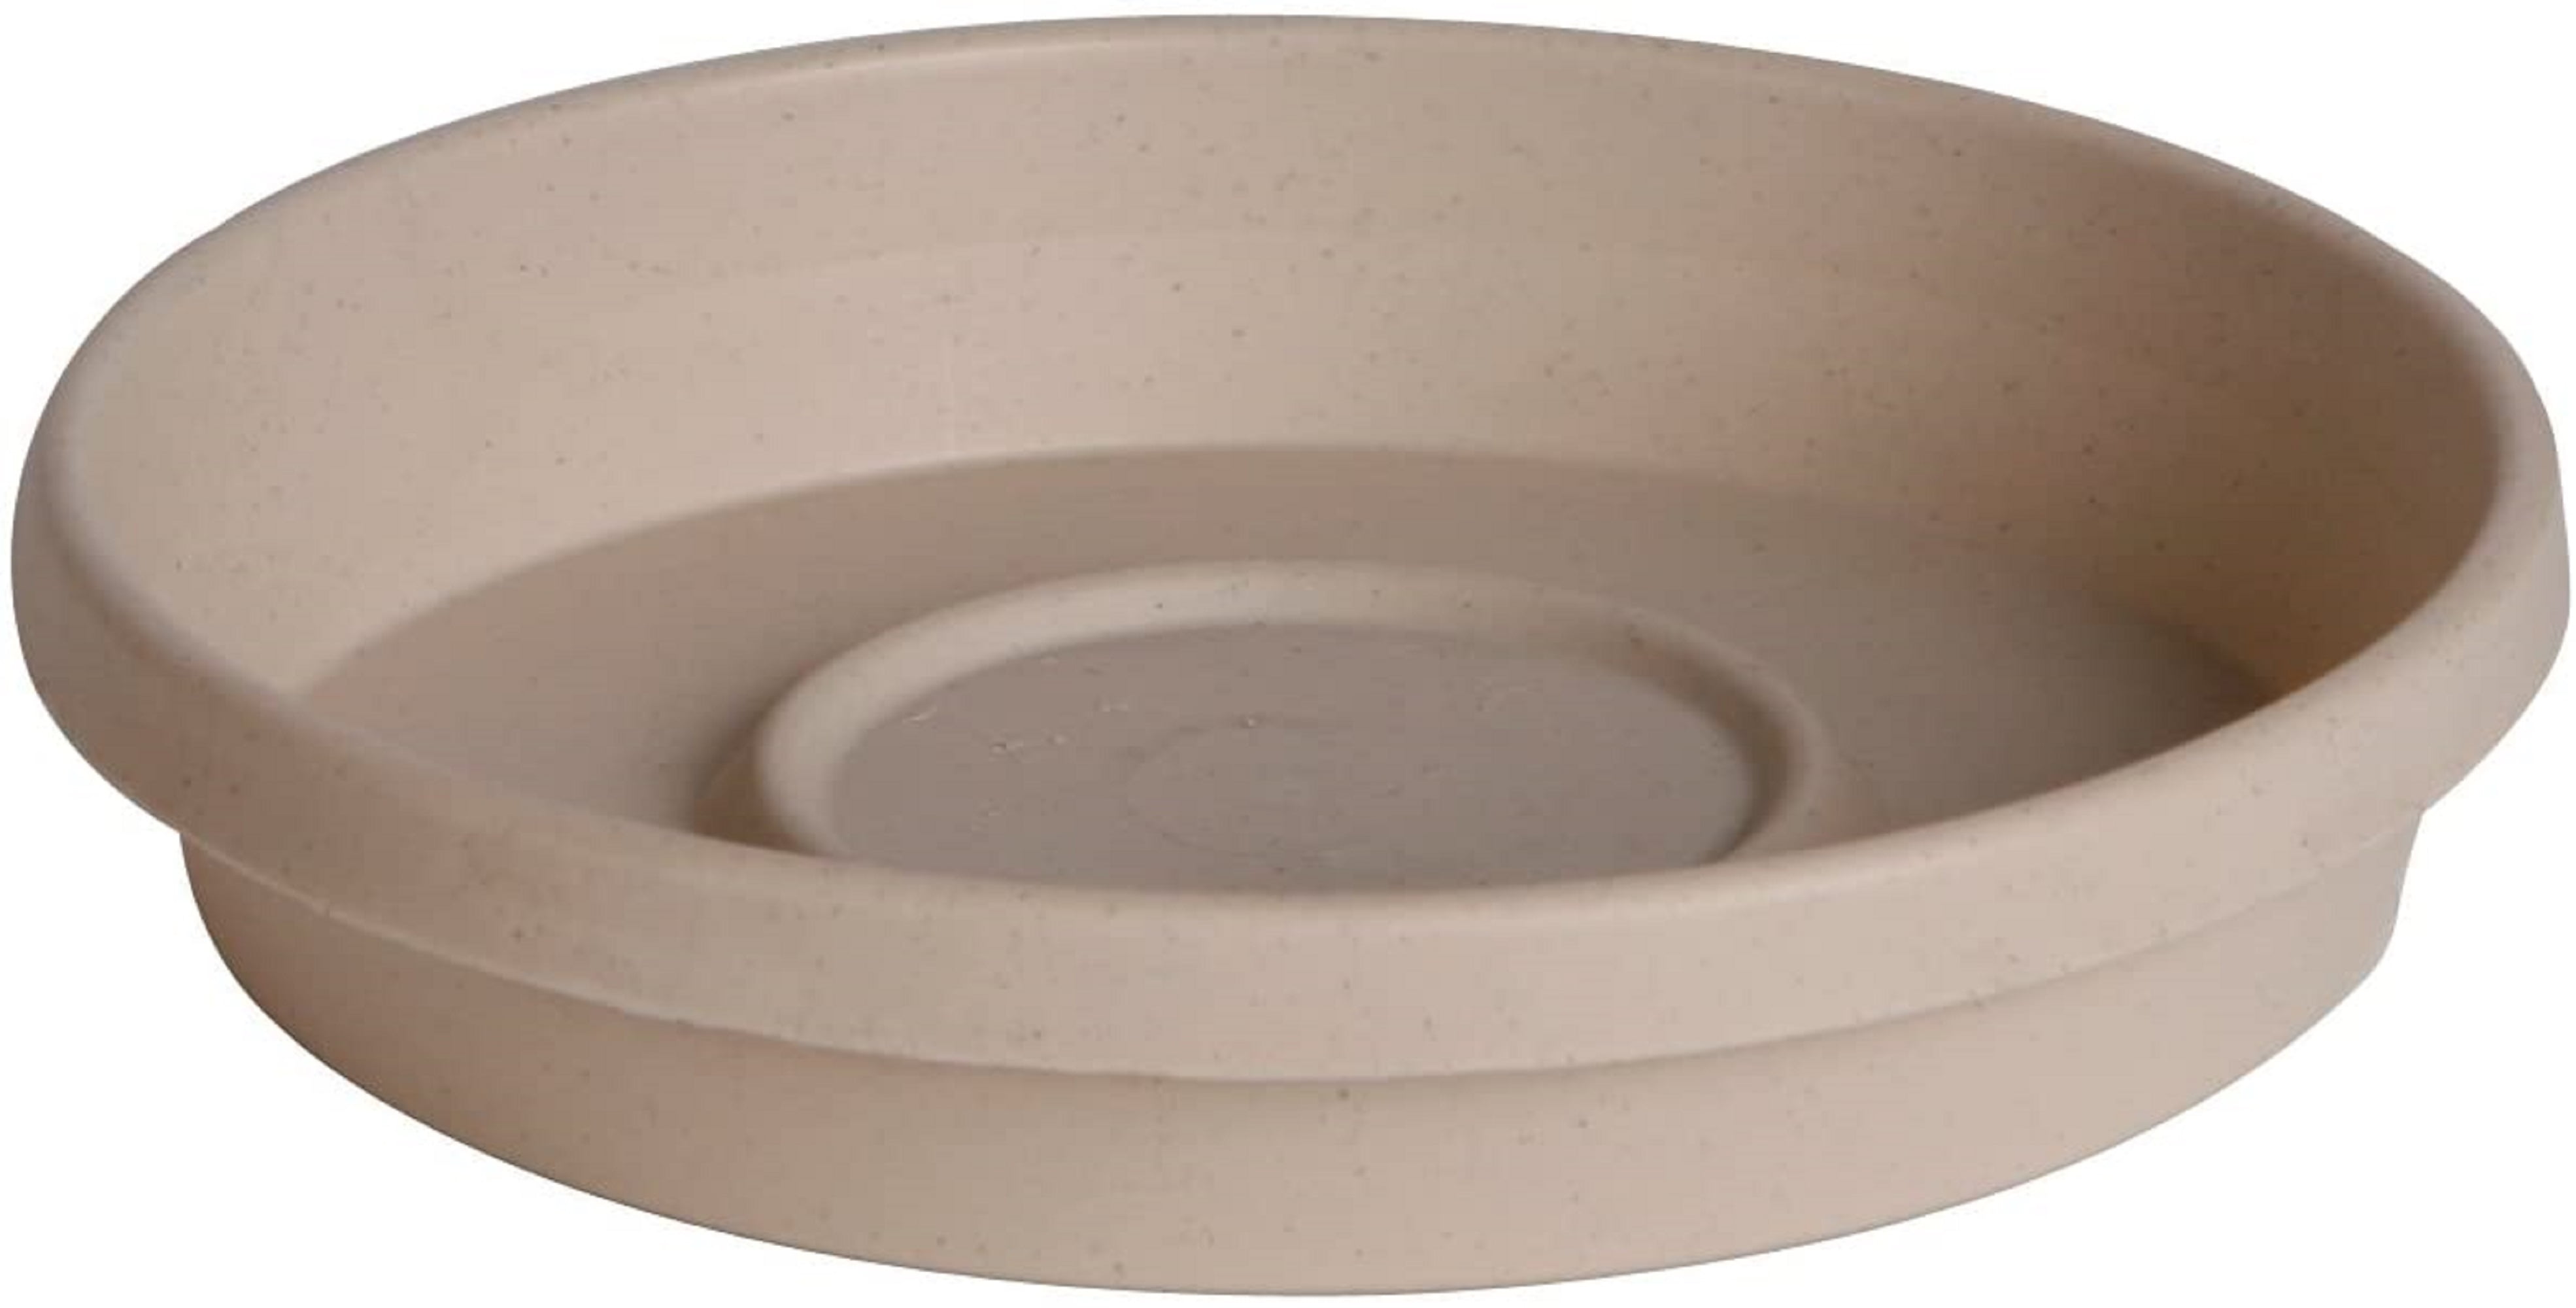 Clay Pot Saucers